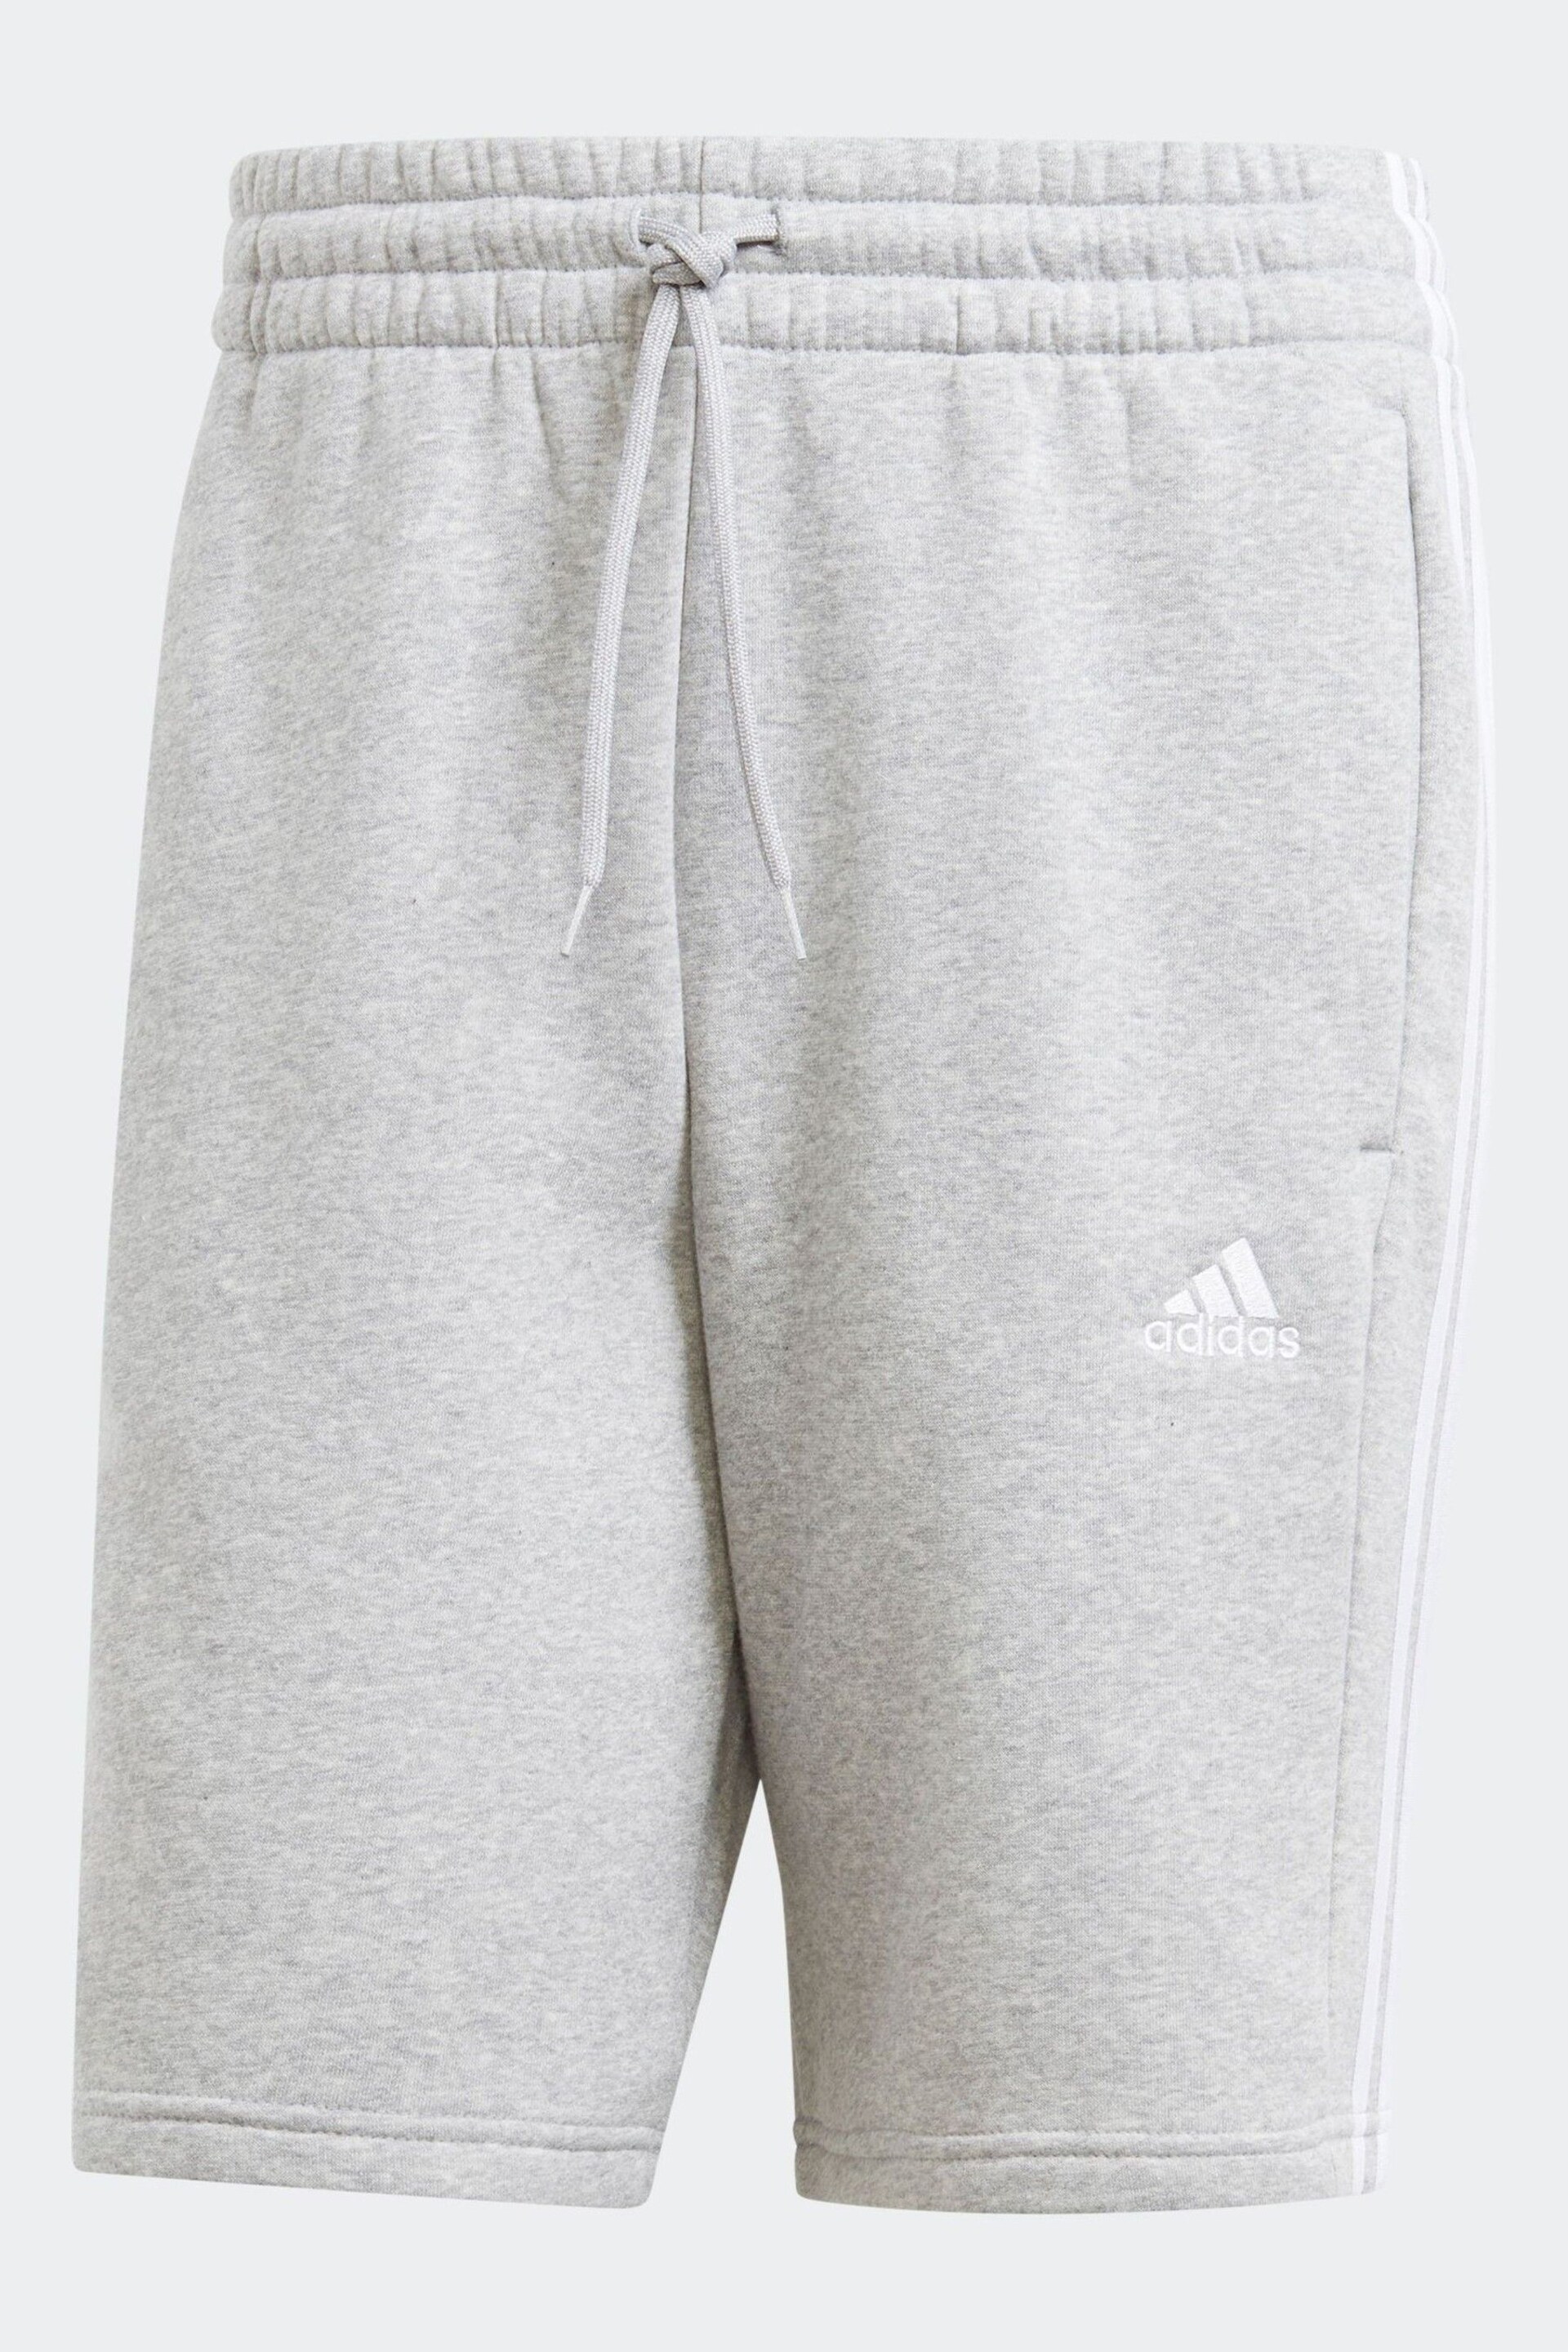 adidas Grey Sportswear Essentials Fleece 3 Stripes Shorts - Image 6 of 6